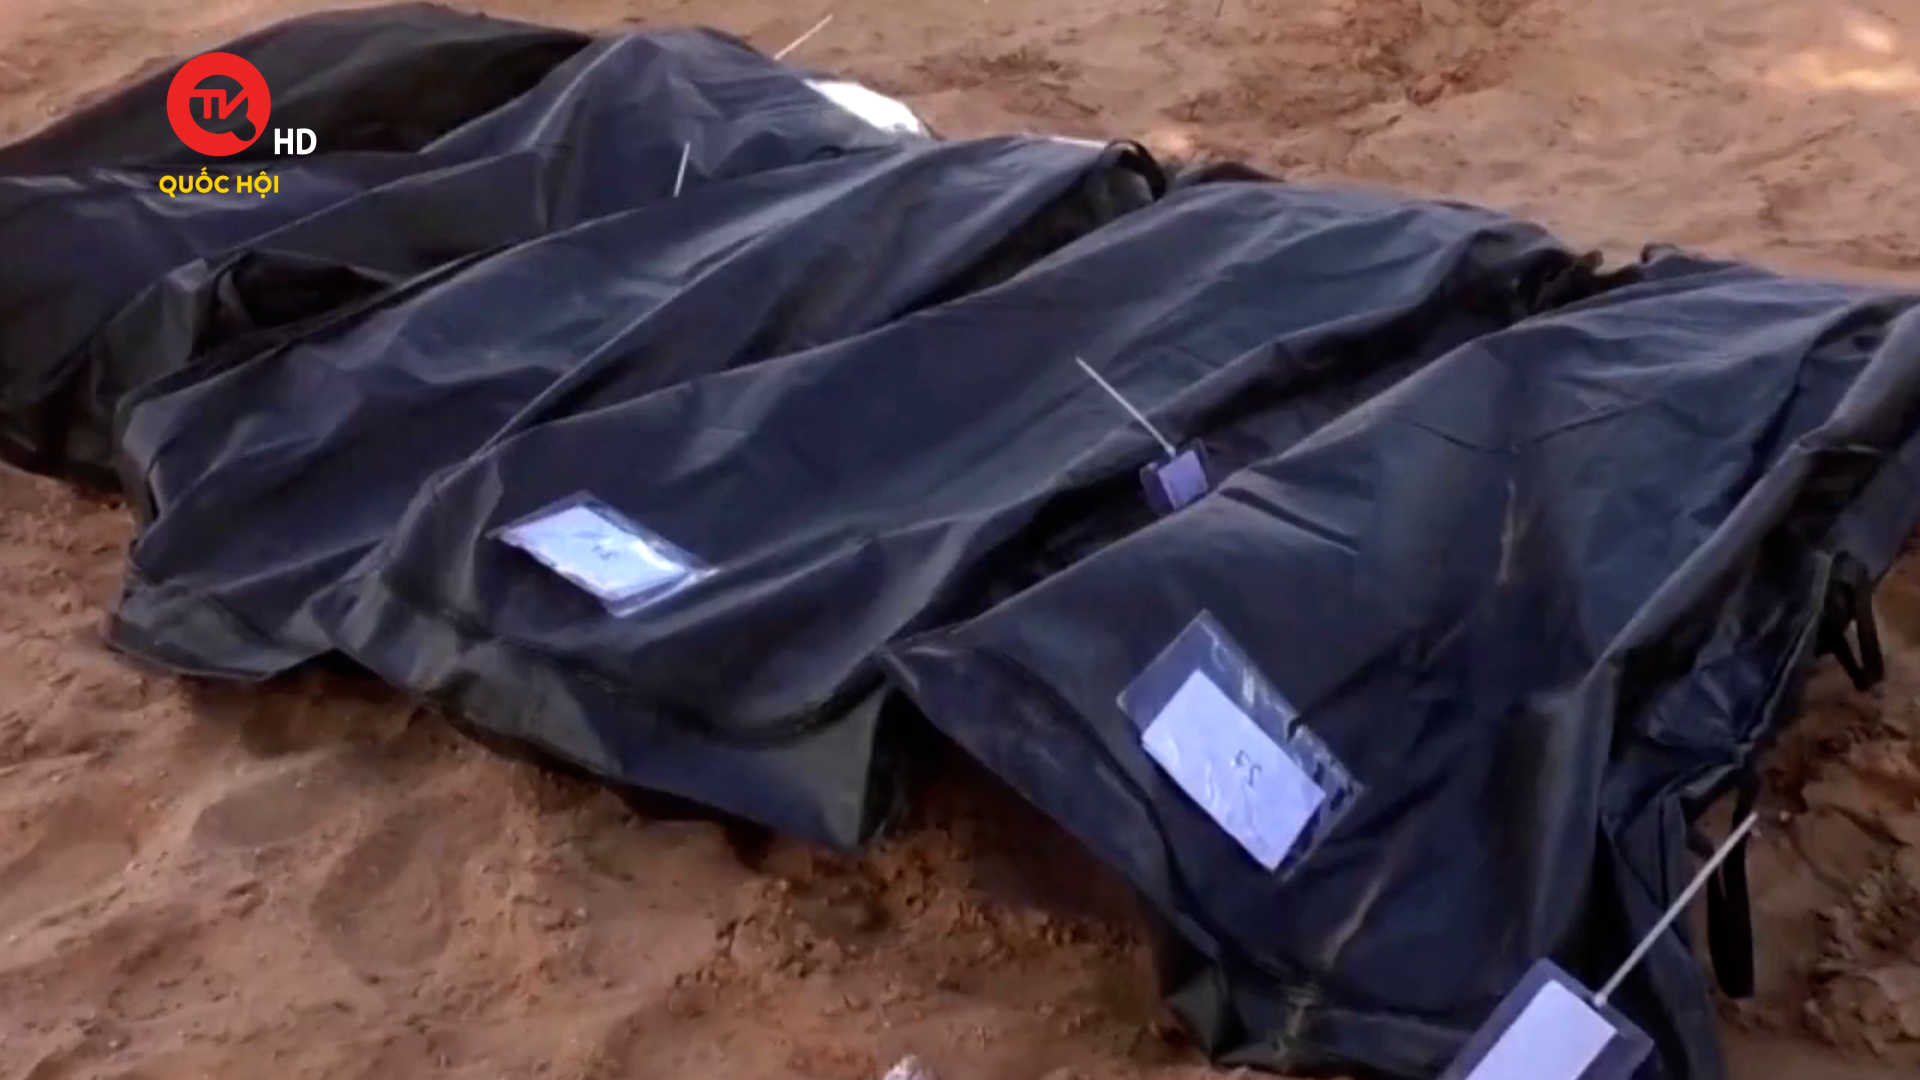 Libya: Phát hiện 42 thi thể trong một hố chôn tập thể ở Sirte